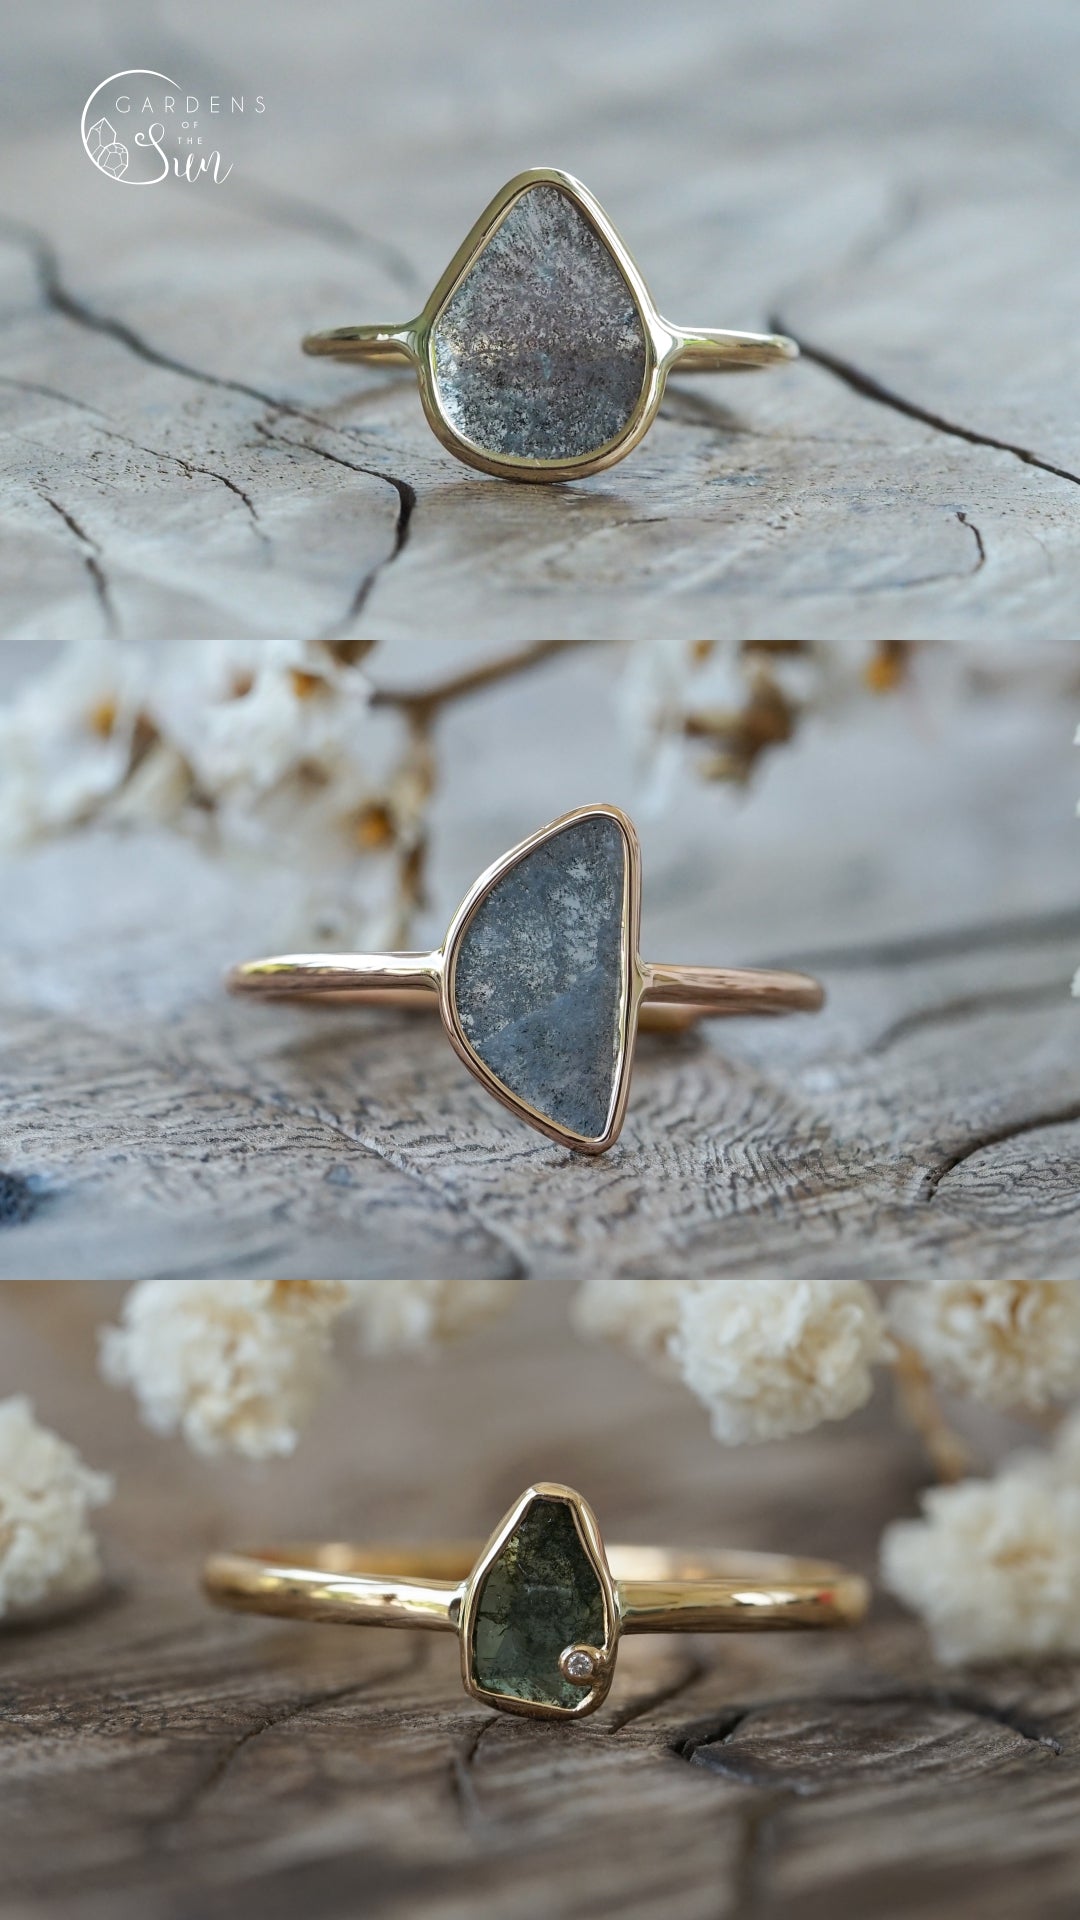 Custom Diamond Slice Ring in Ethical Gold - Gardens of the Sun ...